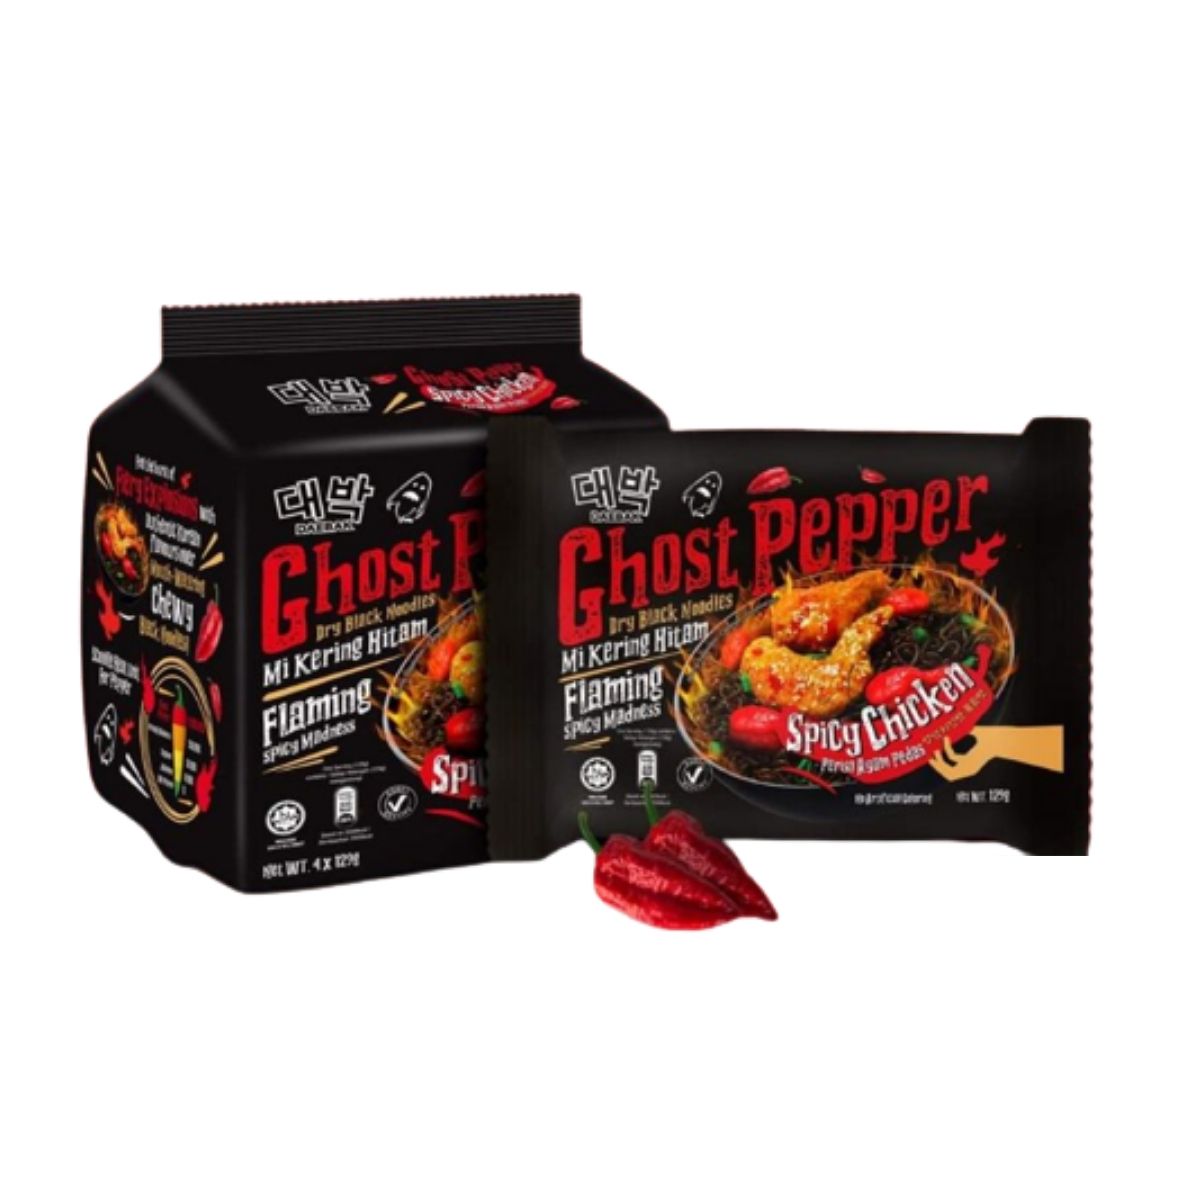 Daebak Ghost pepper Dry Black Noodles - 129g